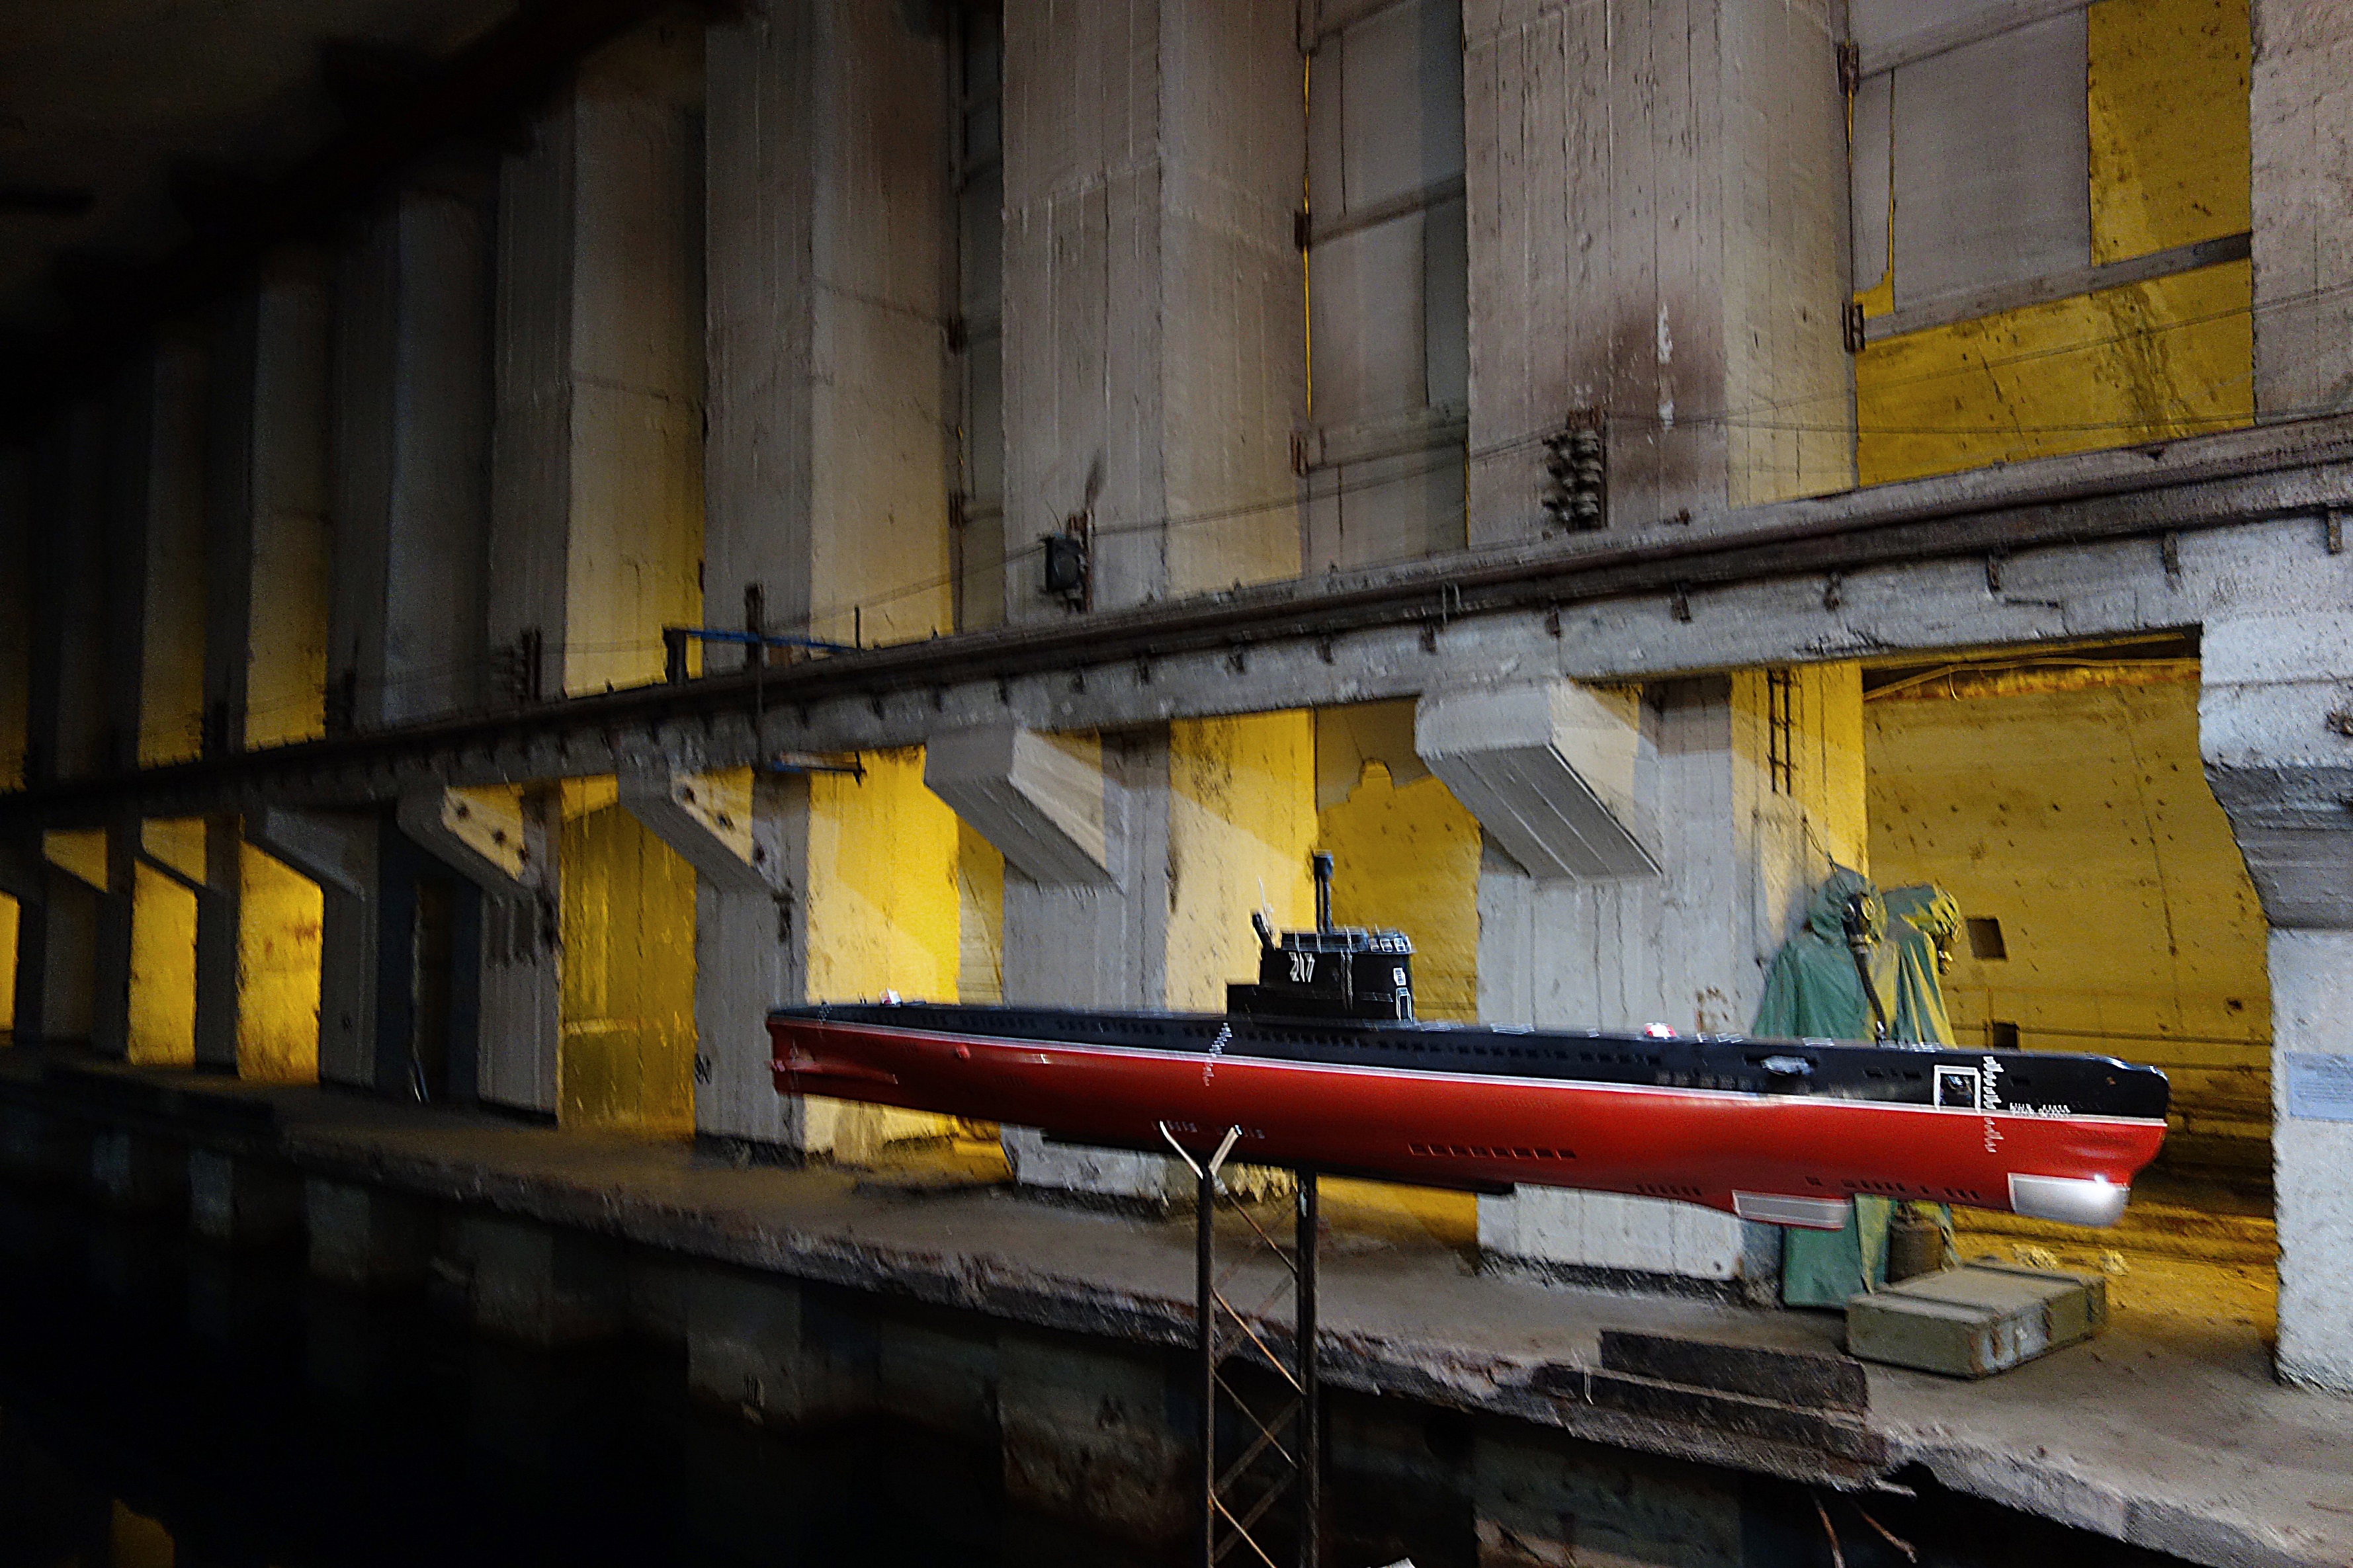 Тоннель завода-музуя по ремонту подводных лодок в Балаклаве. Фото Морошкина В.В.